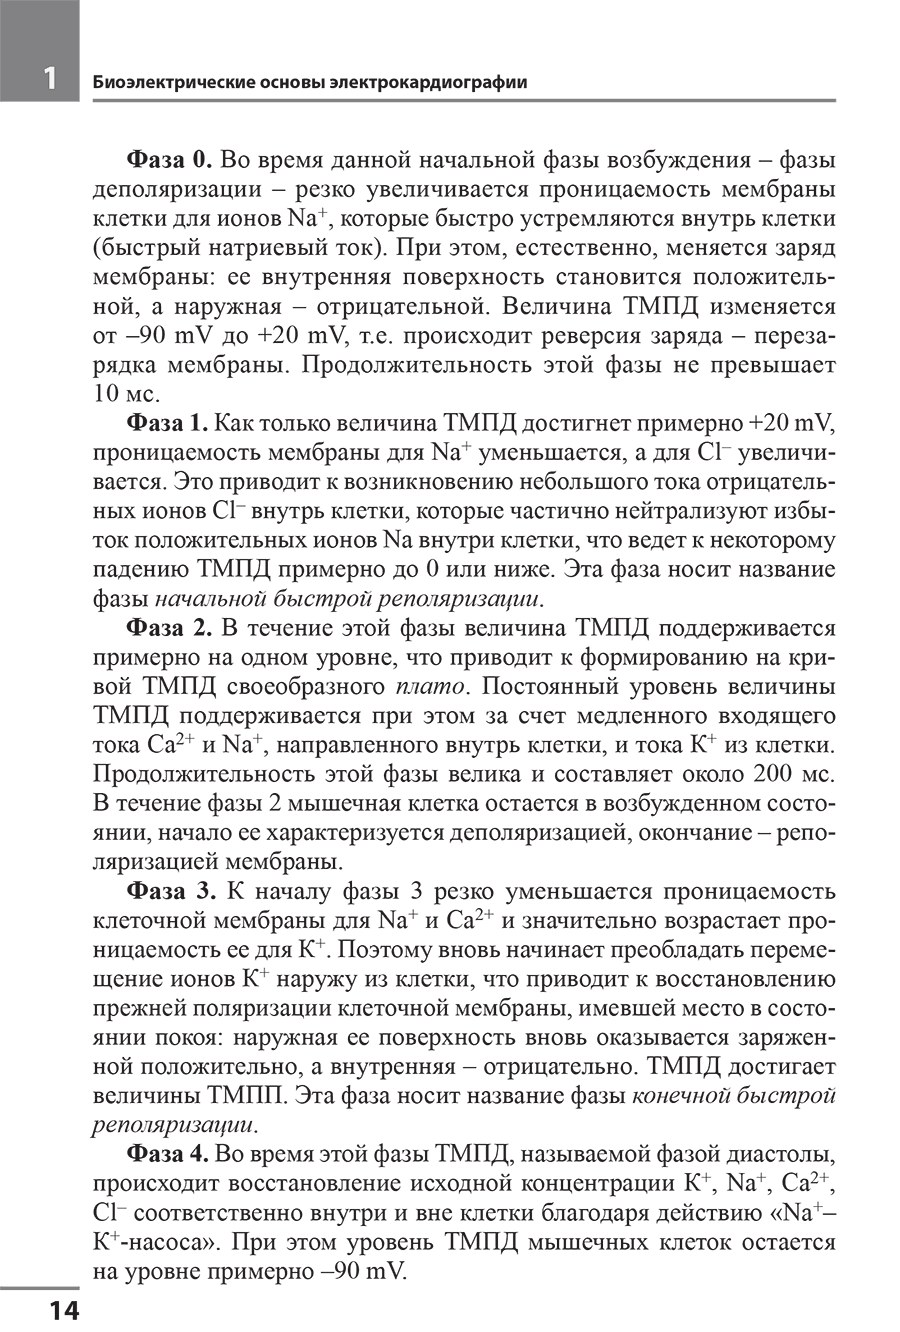 Пример страницы из книги "Электрокардиография" - Мурашко В. В., Струтынский А. В.